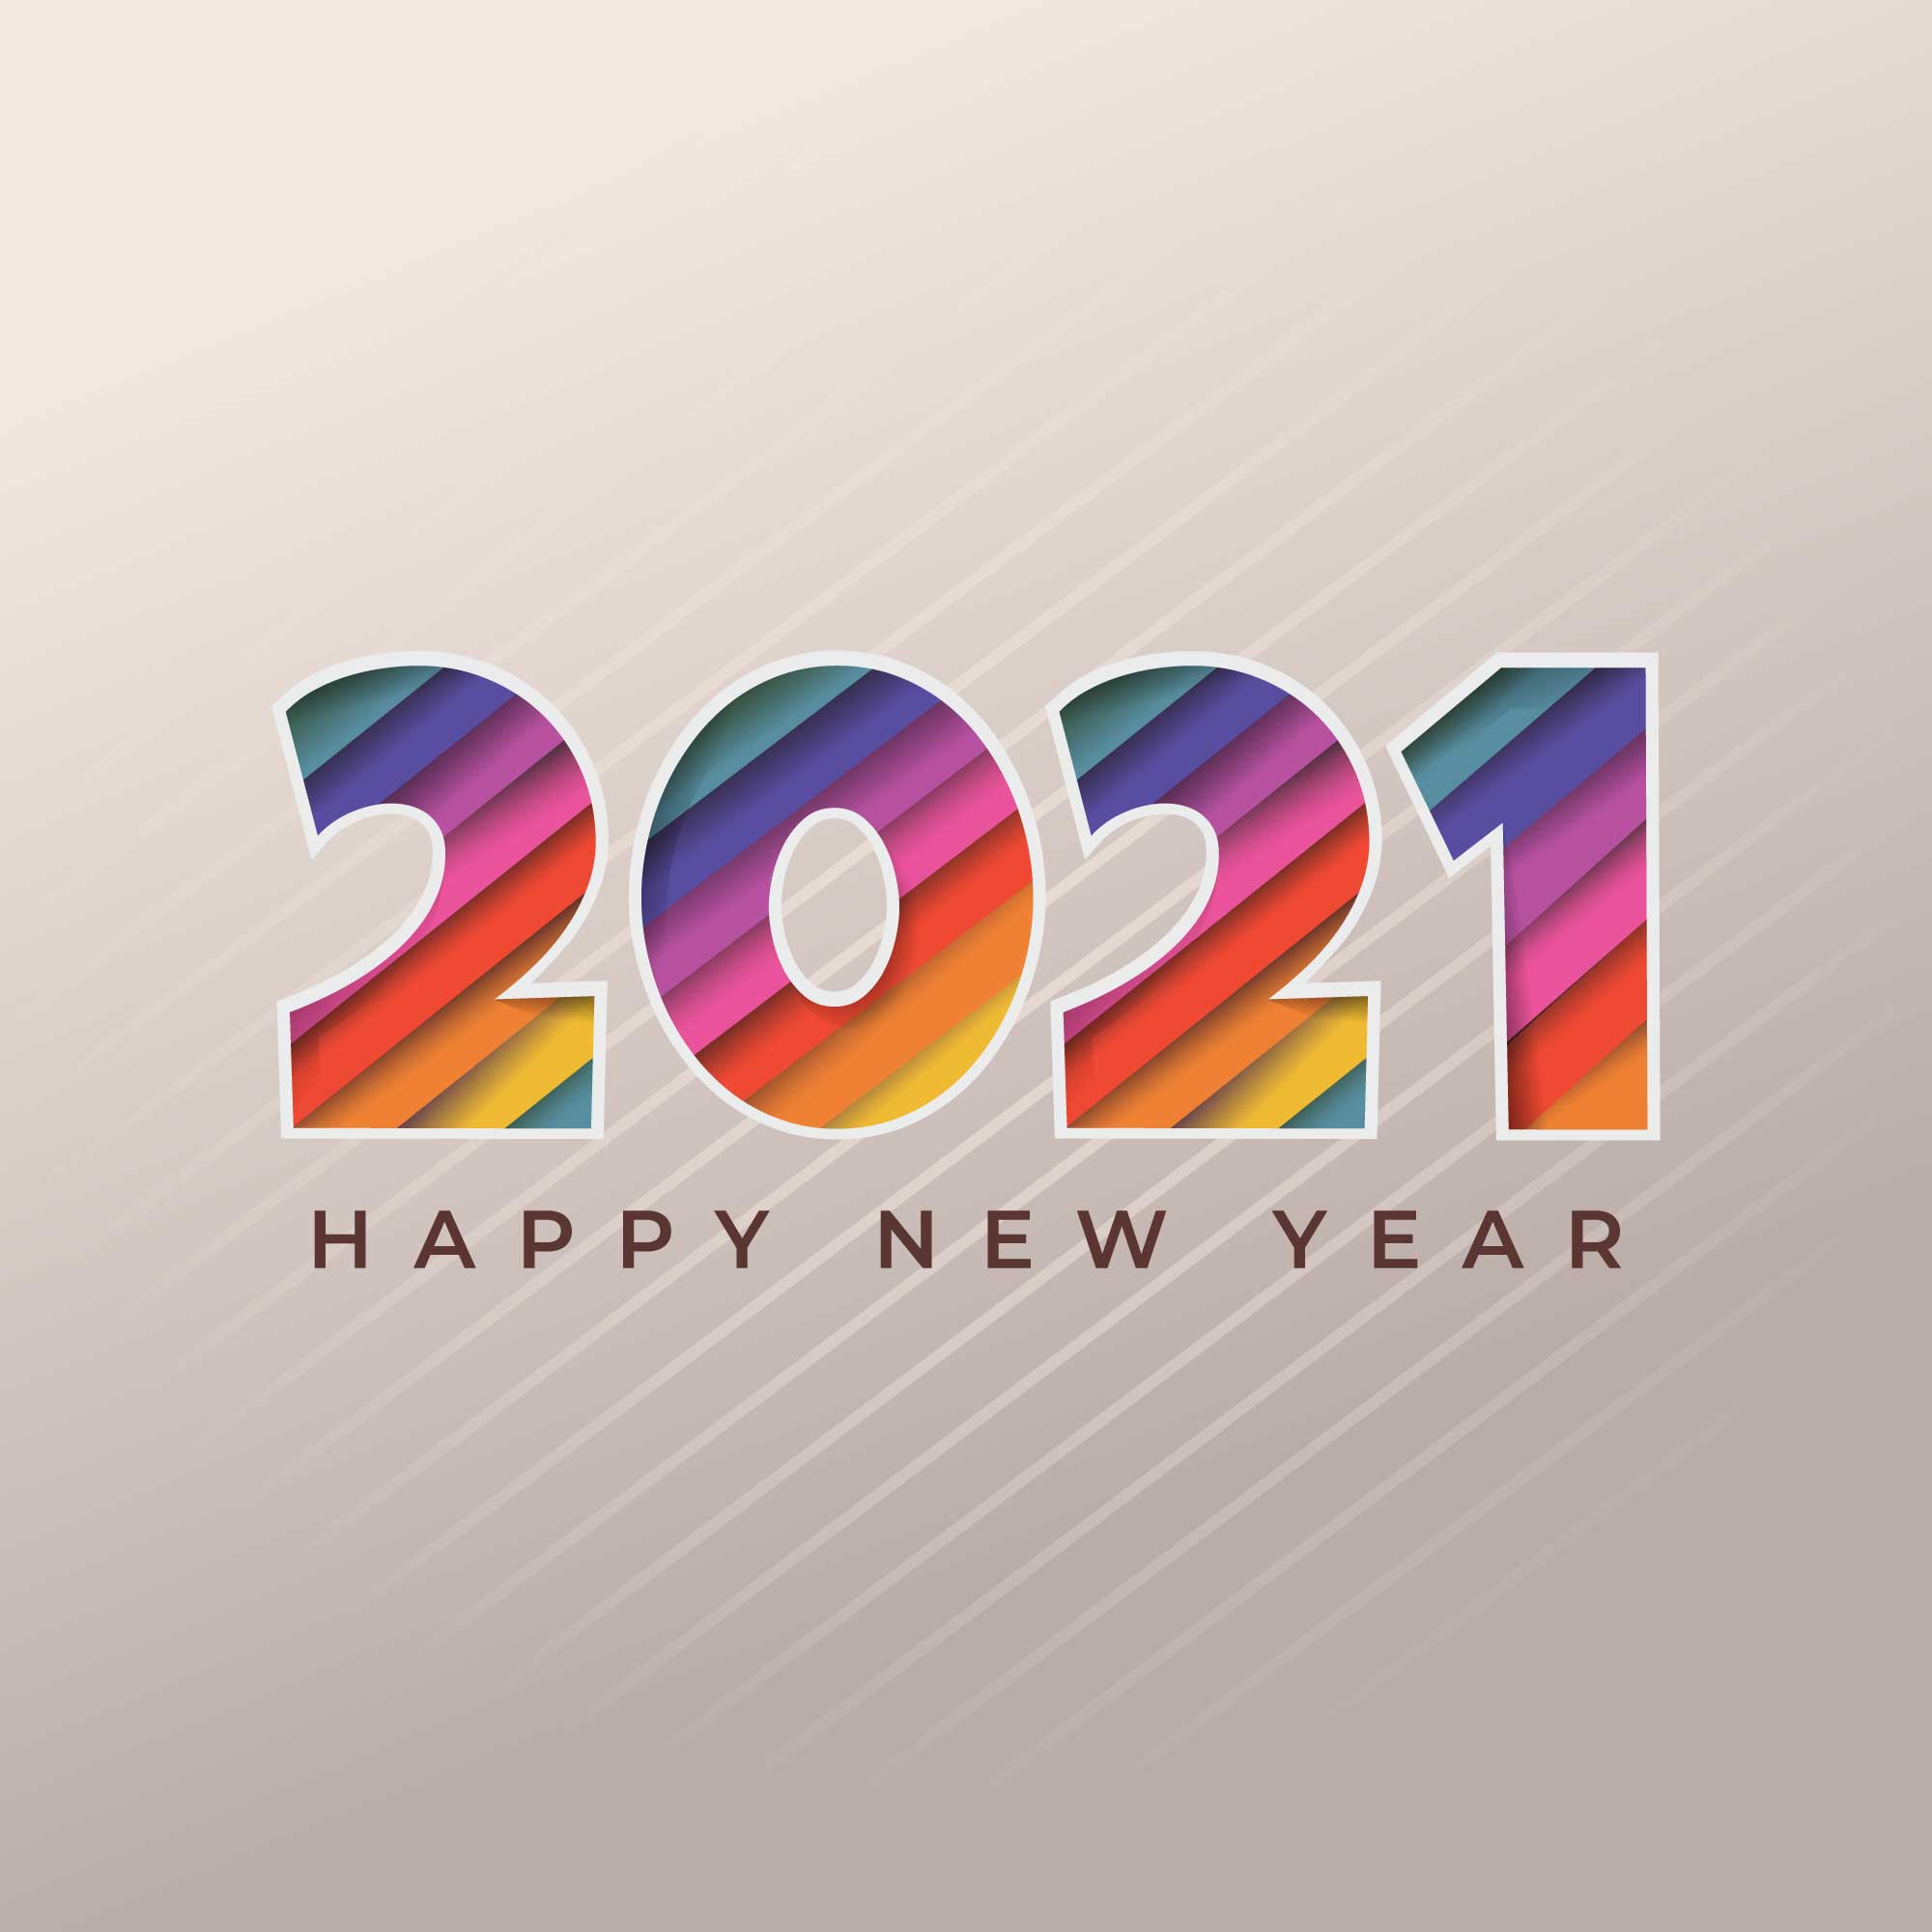 2021年Happy New Year貼圖 免費下載 | 天天瘋後製